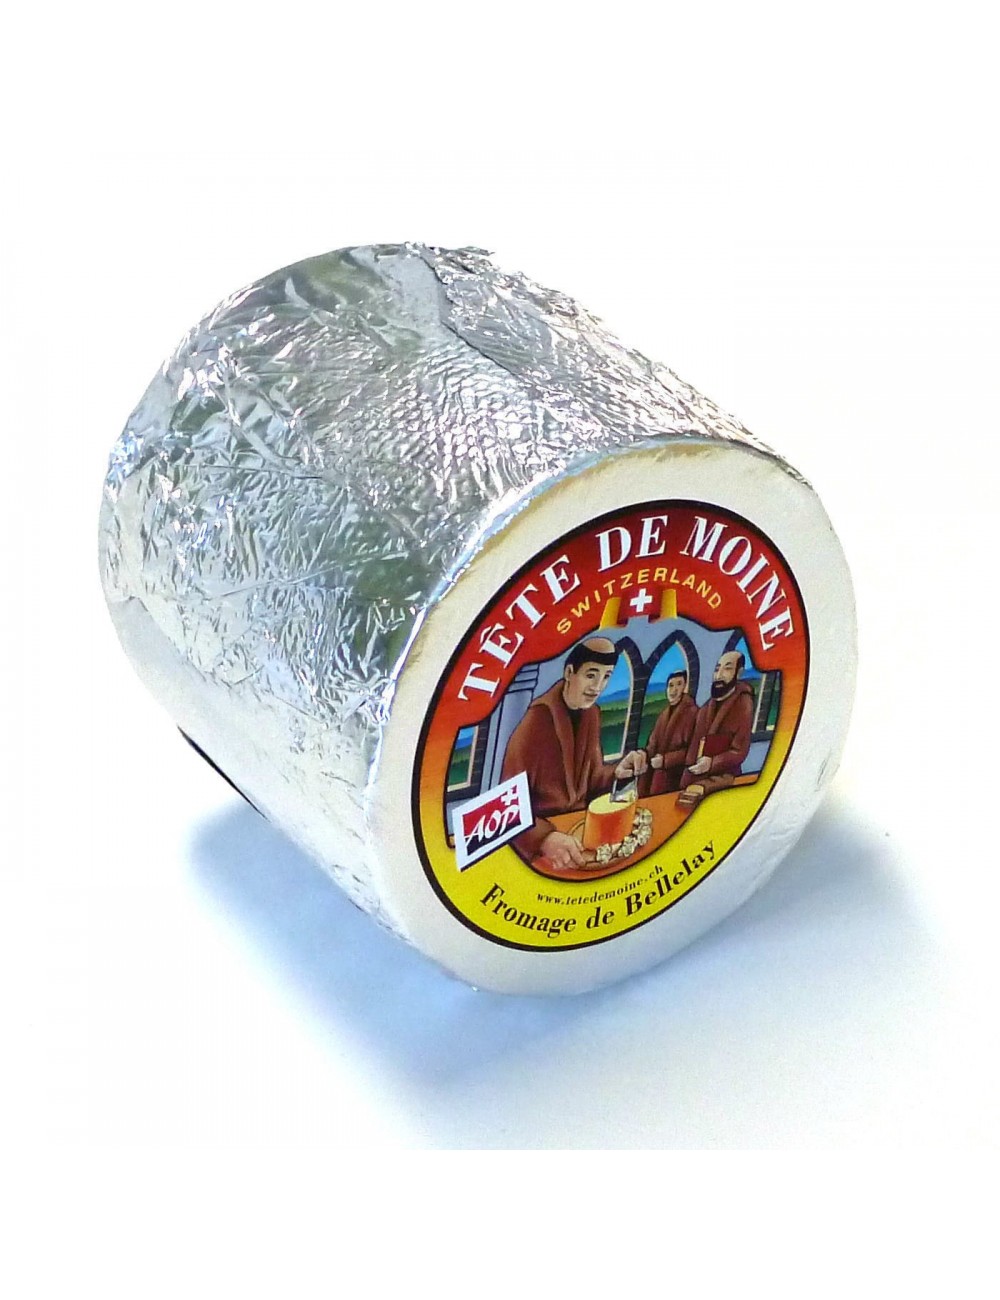 Appareil pour fromage Tête de moine + cloche » GreenYaute